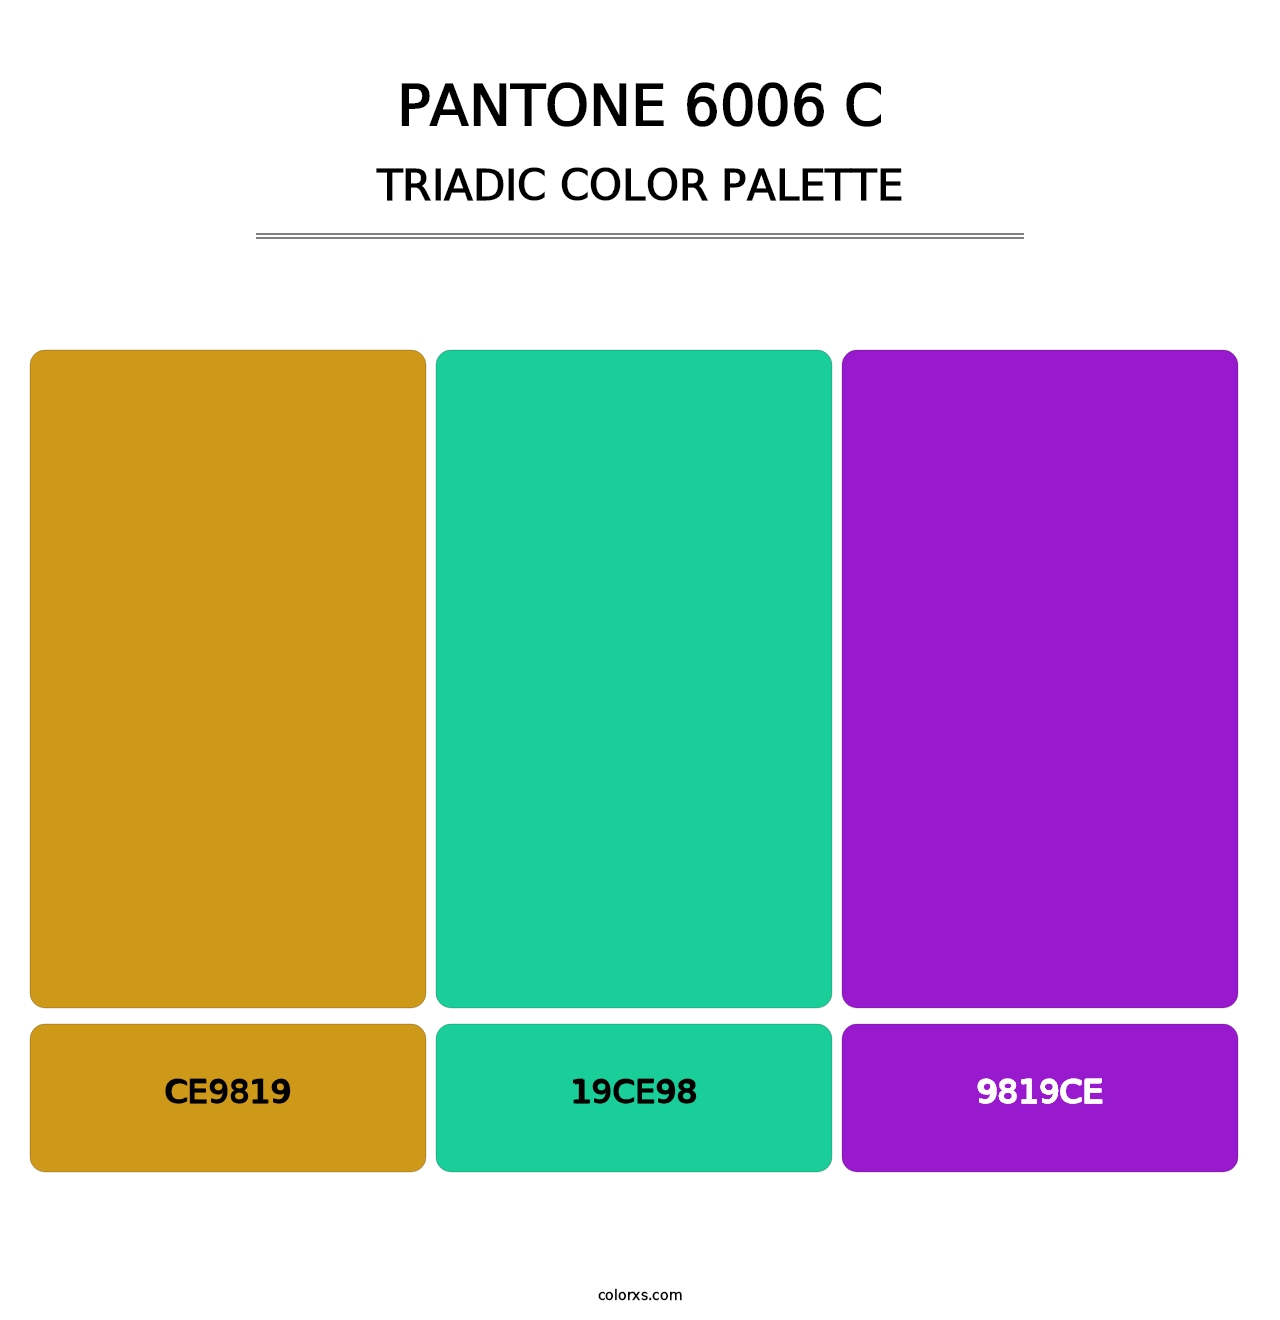 PANTONE 6006 C - Triadic Color Palette